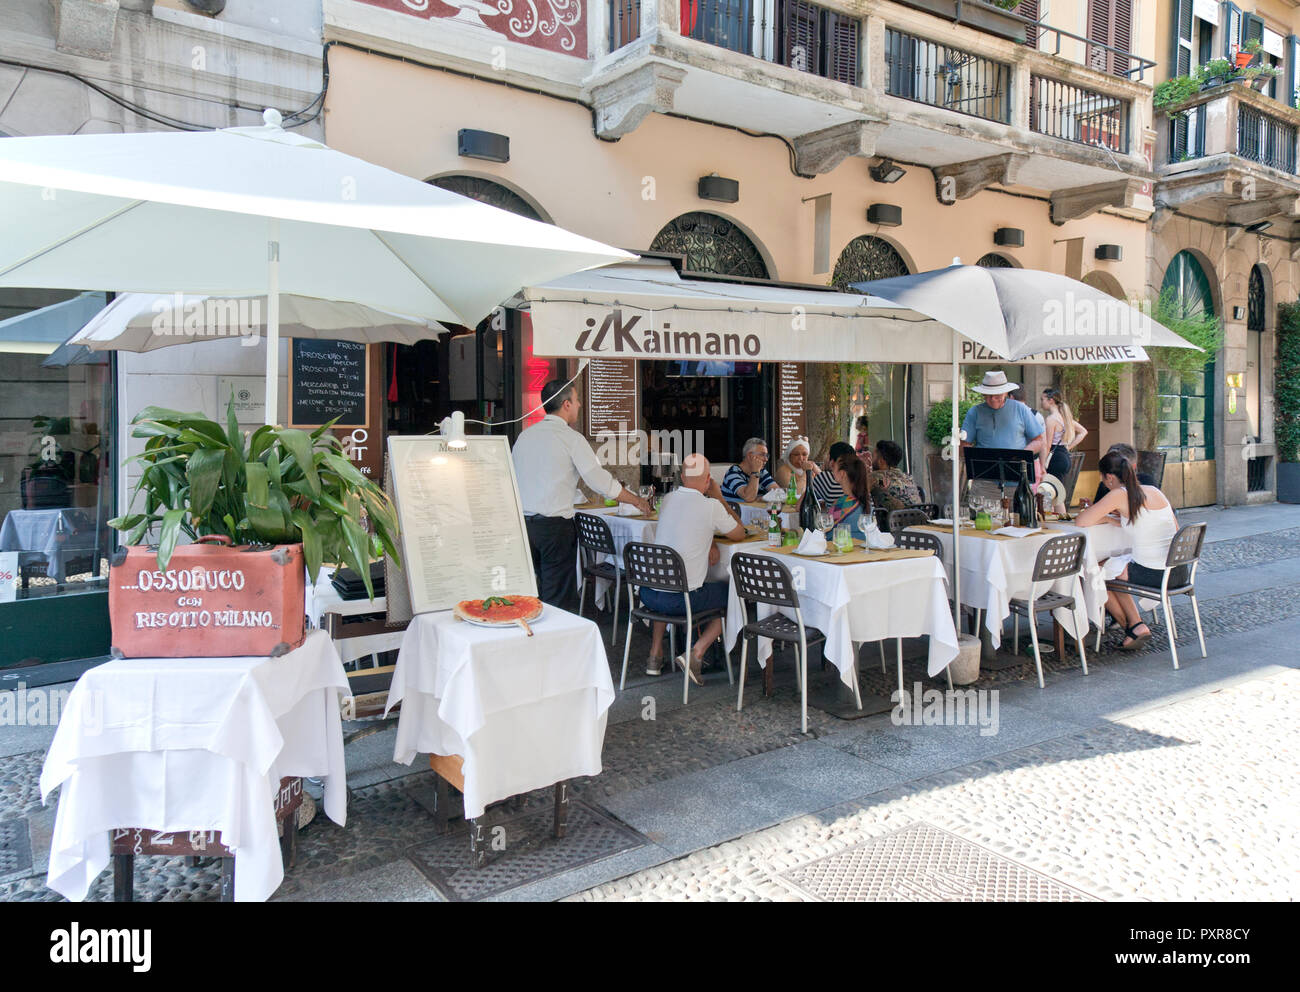 La comida y el vino son vitales para los residentes y visitantes por igual en Milán, Italia. Kaimano atrae clientes con su ossobuco y charcutería sobresaliente. Foto de stock